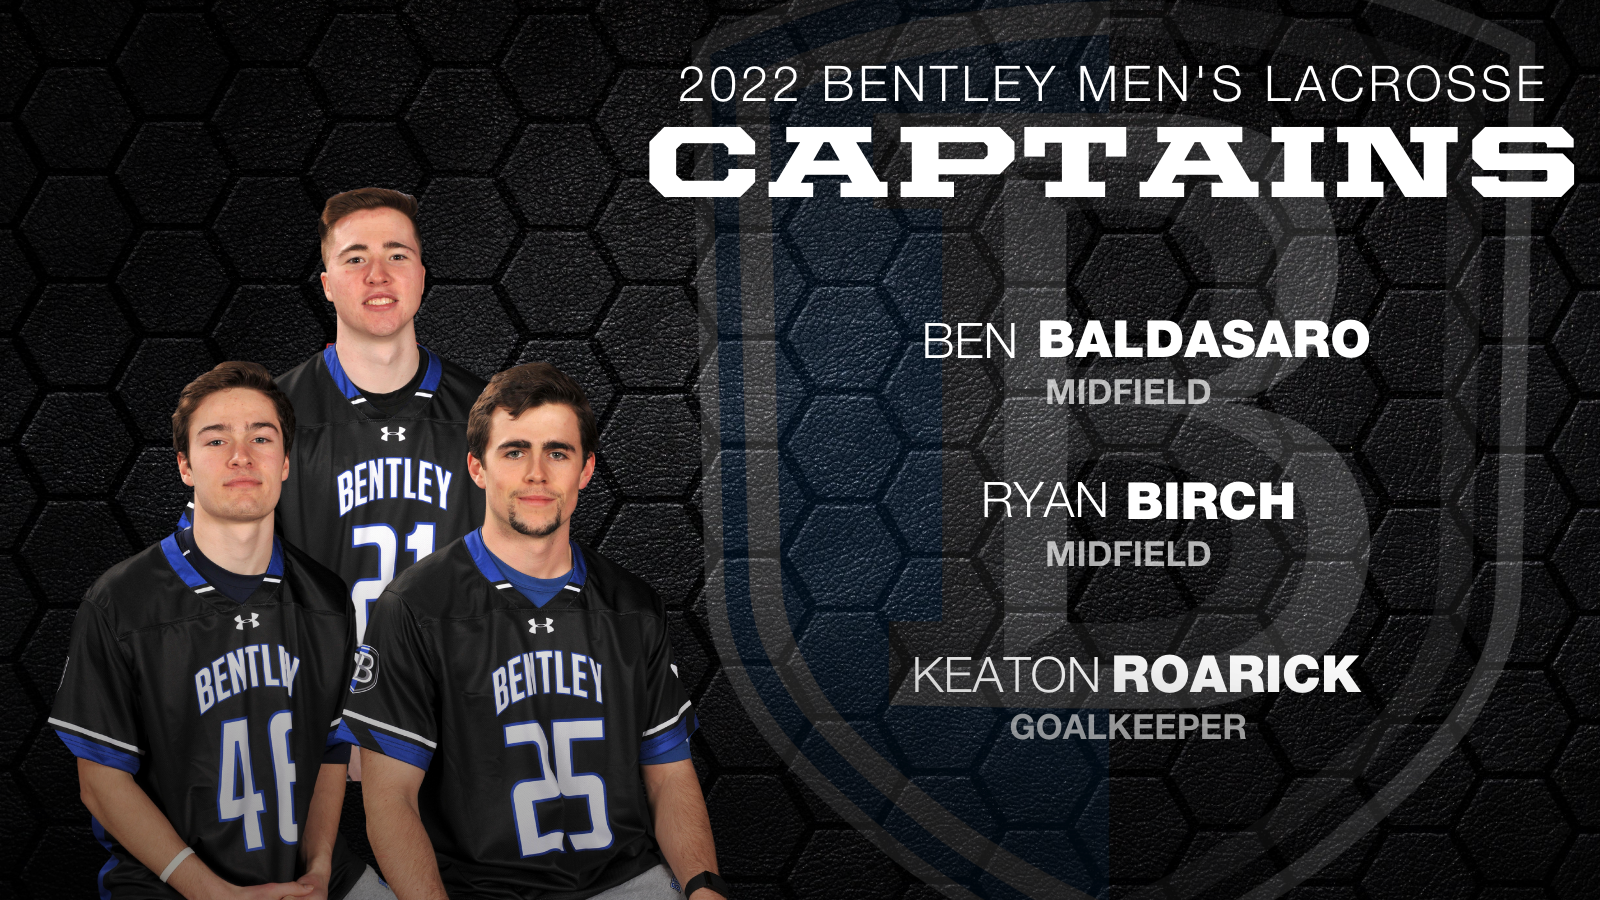 Baldasaro, Birch and Roarick Named Captains of 2022 Bentley Men’s Lacrosse Team